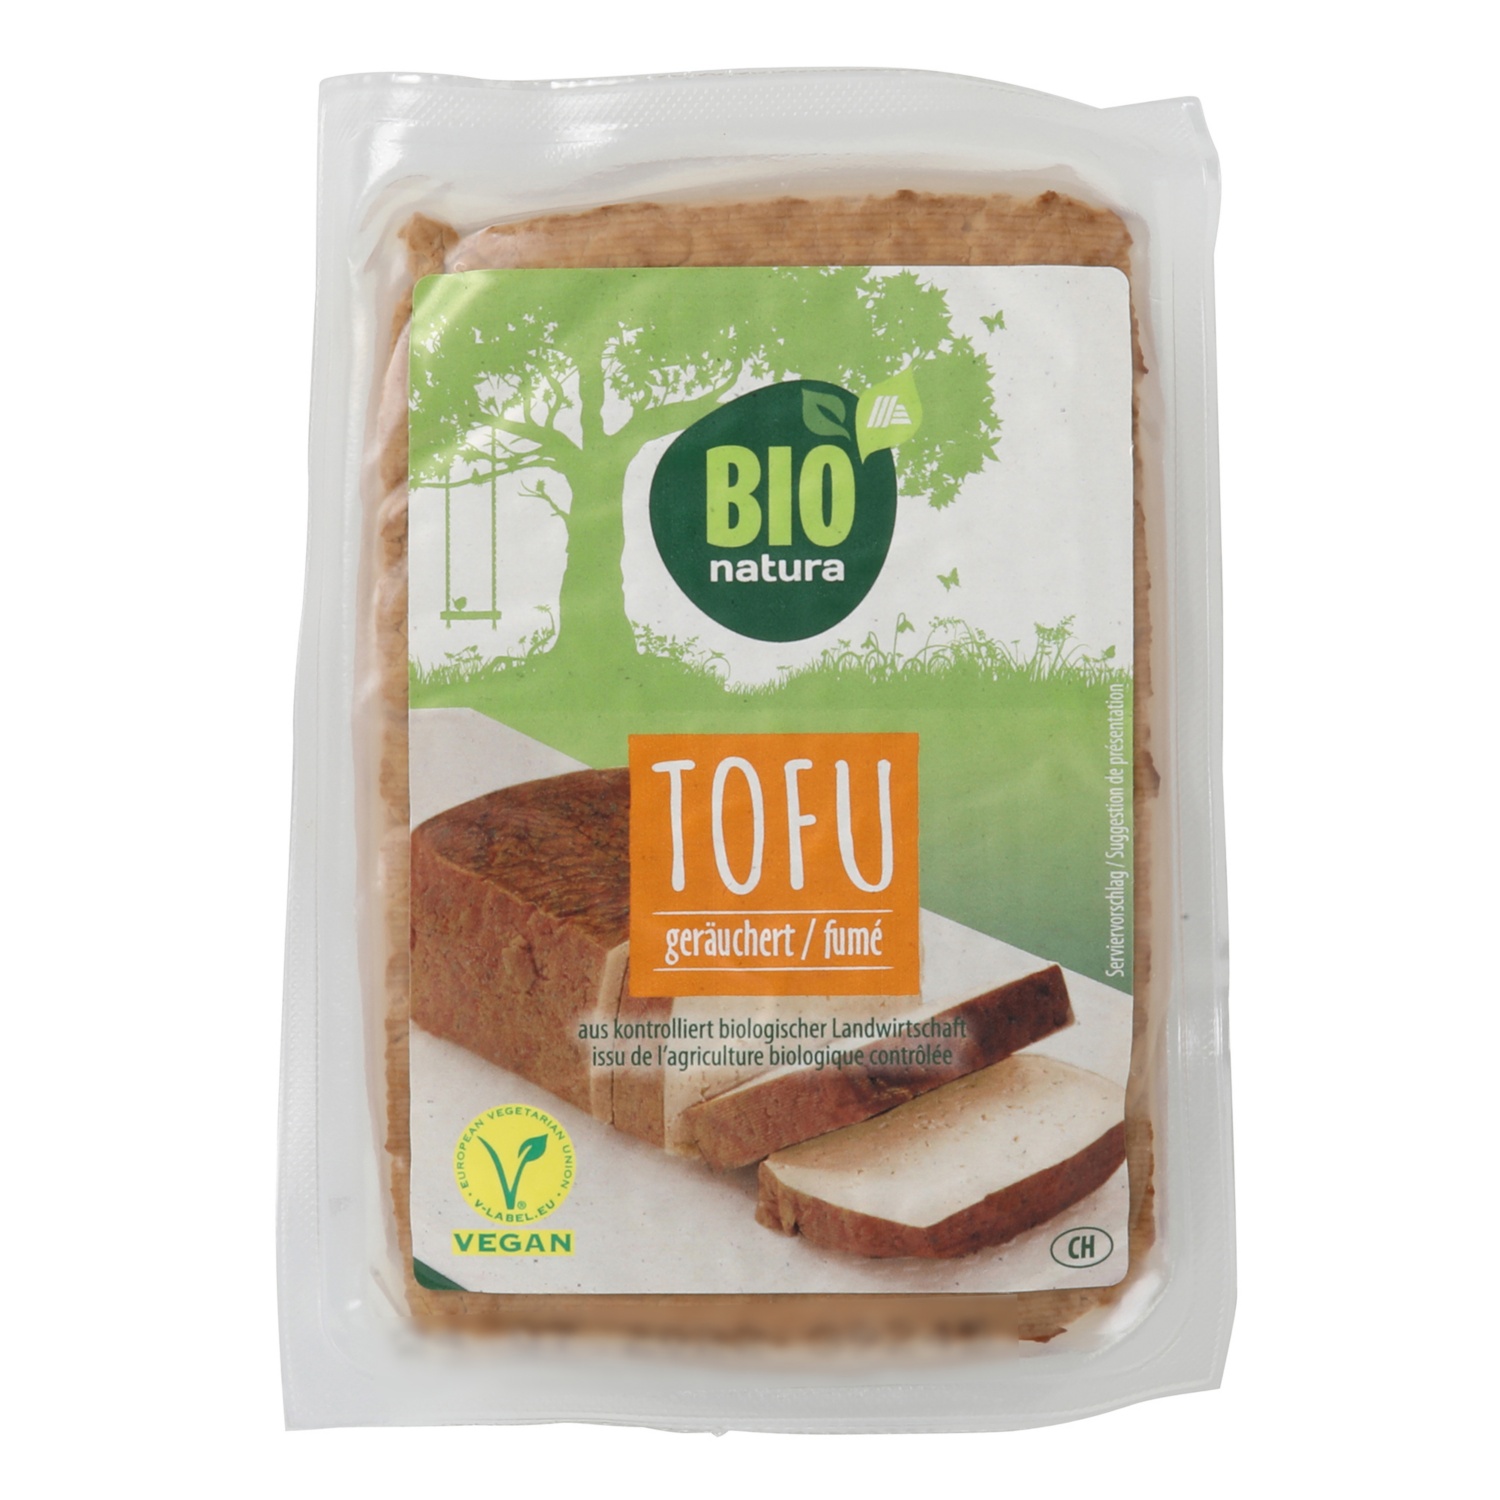 BIO NATURA Tofu, geräuchert